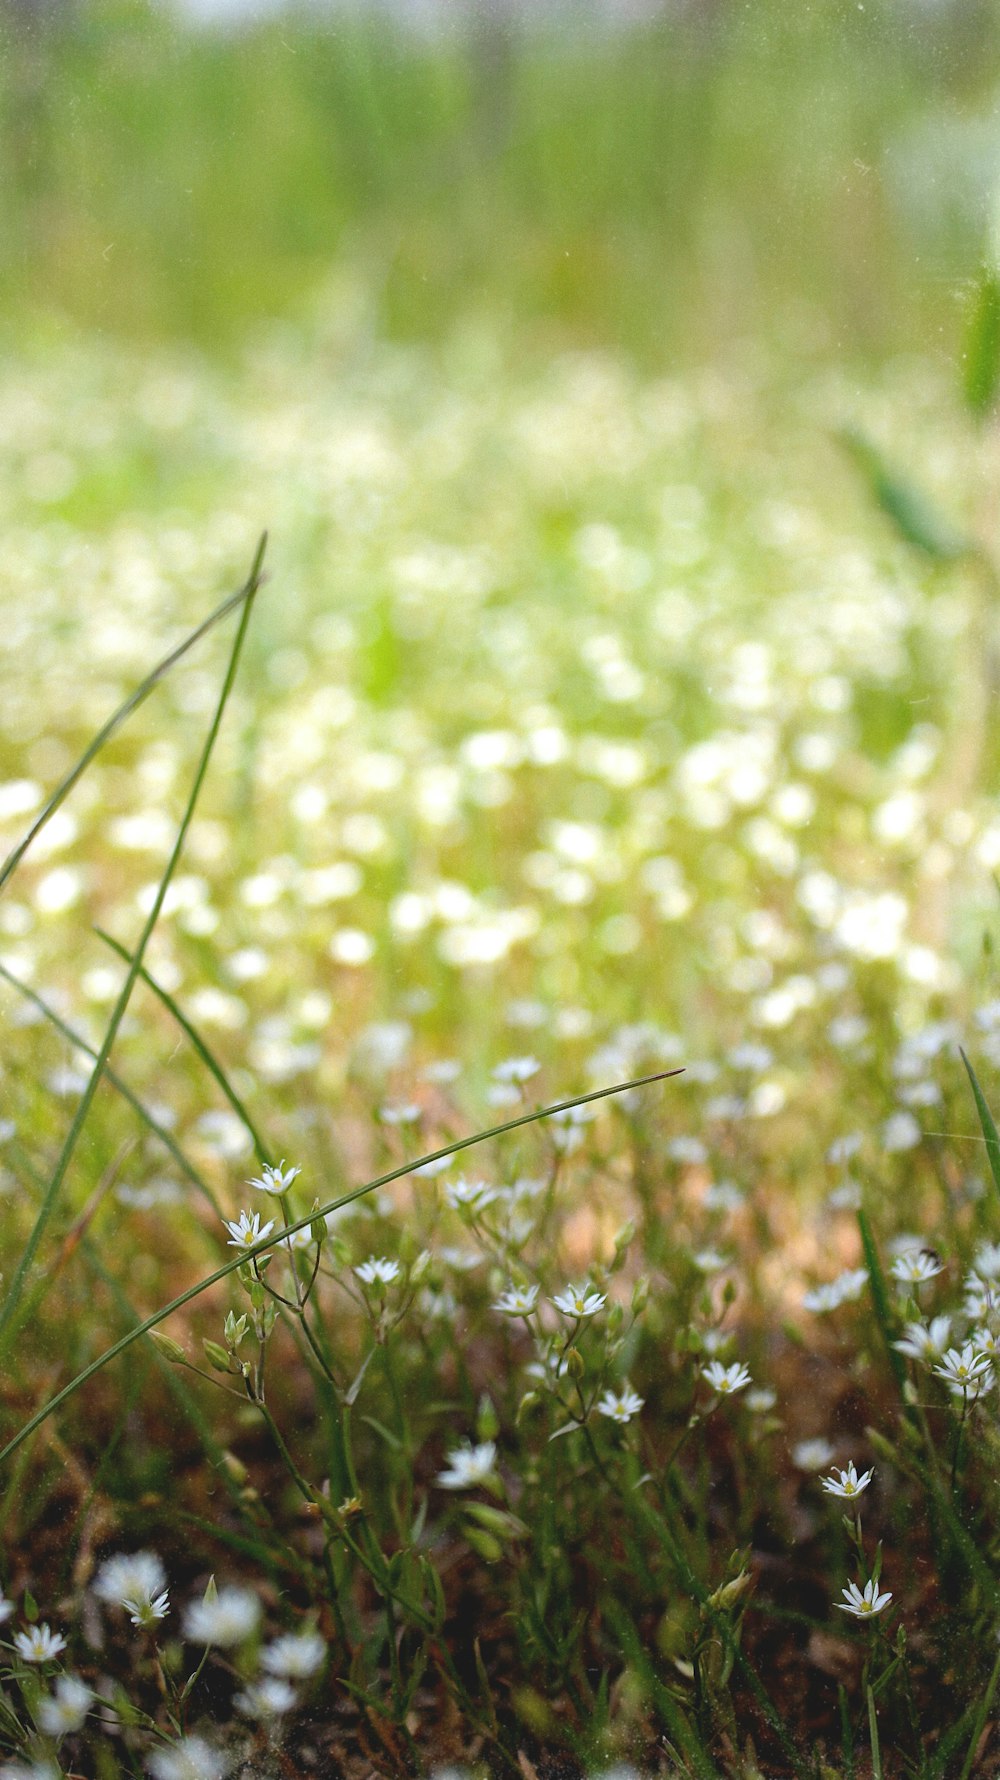 Hoa bồ công anh trắng rực rỡ trên nền xanh tươi tắn sẽ khiến bạn phải mê mẩn. Hãy mở xem hình ảnh liên quan đến từ khóa này để ngắm nhìn những bông hoa xinh đẹp trên nền xanh thiên nhiên.